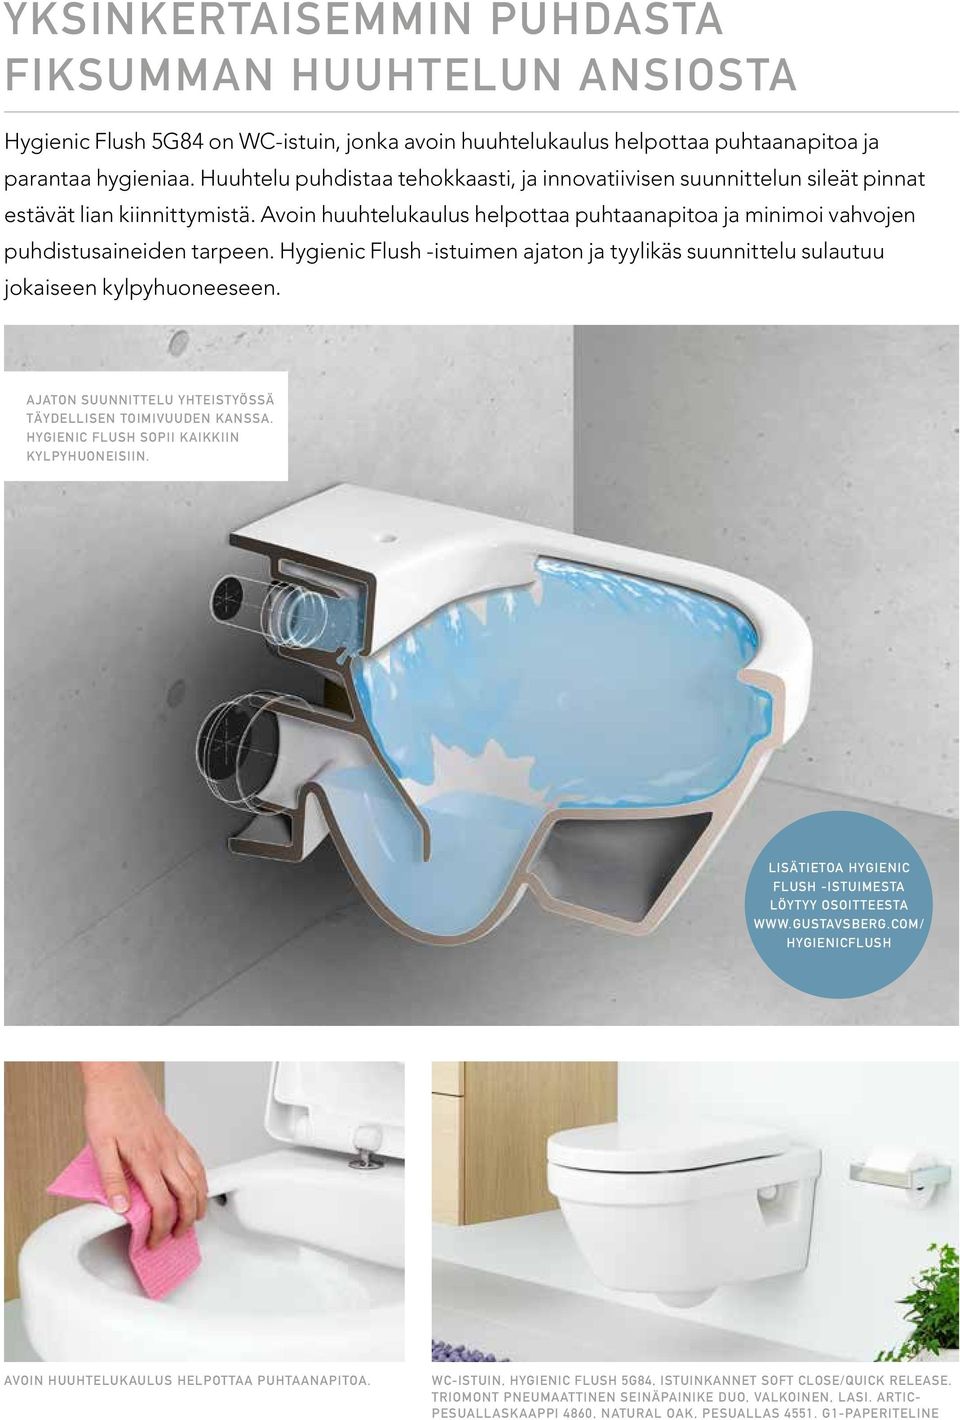 Hygienic Flush -istuimen ajaton ja tyylikäs suunnittelu sulautuu jokaiseen kylpyhuoneeseen. Ajaton suunnittelu yhteistyössä täydellisen toimivuuden kanssa.